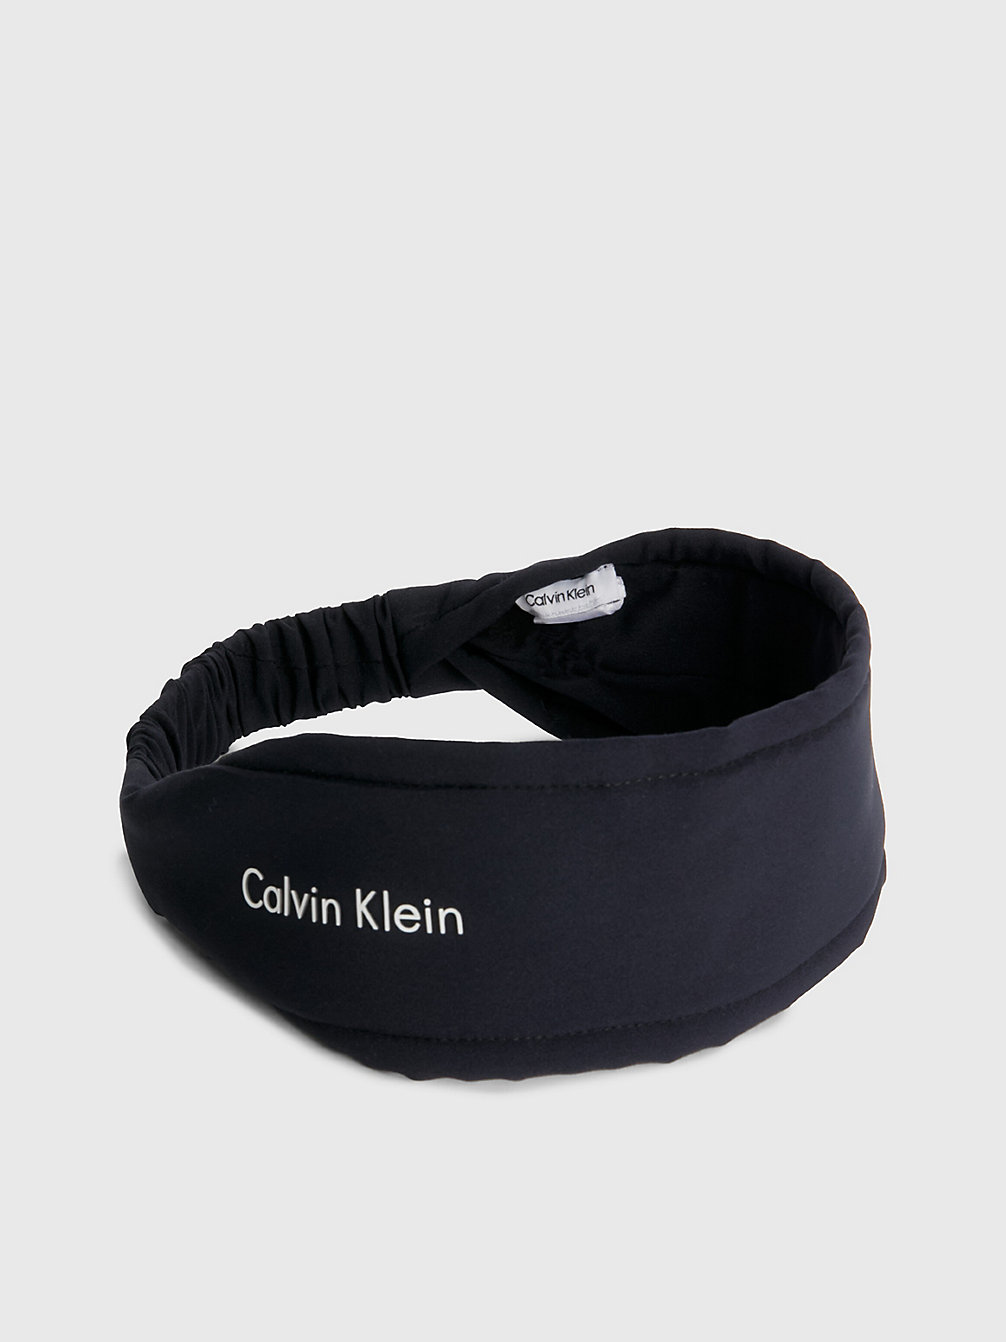 CK BLACK Tuch Mit Logo undefined Damen Calvin Klein